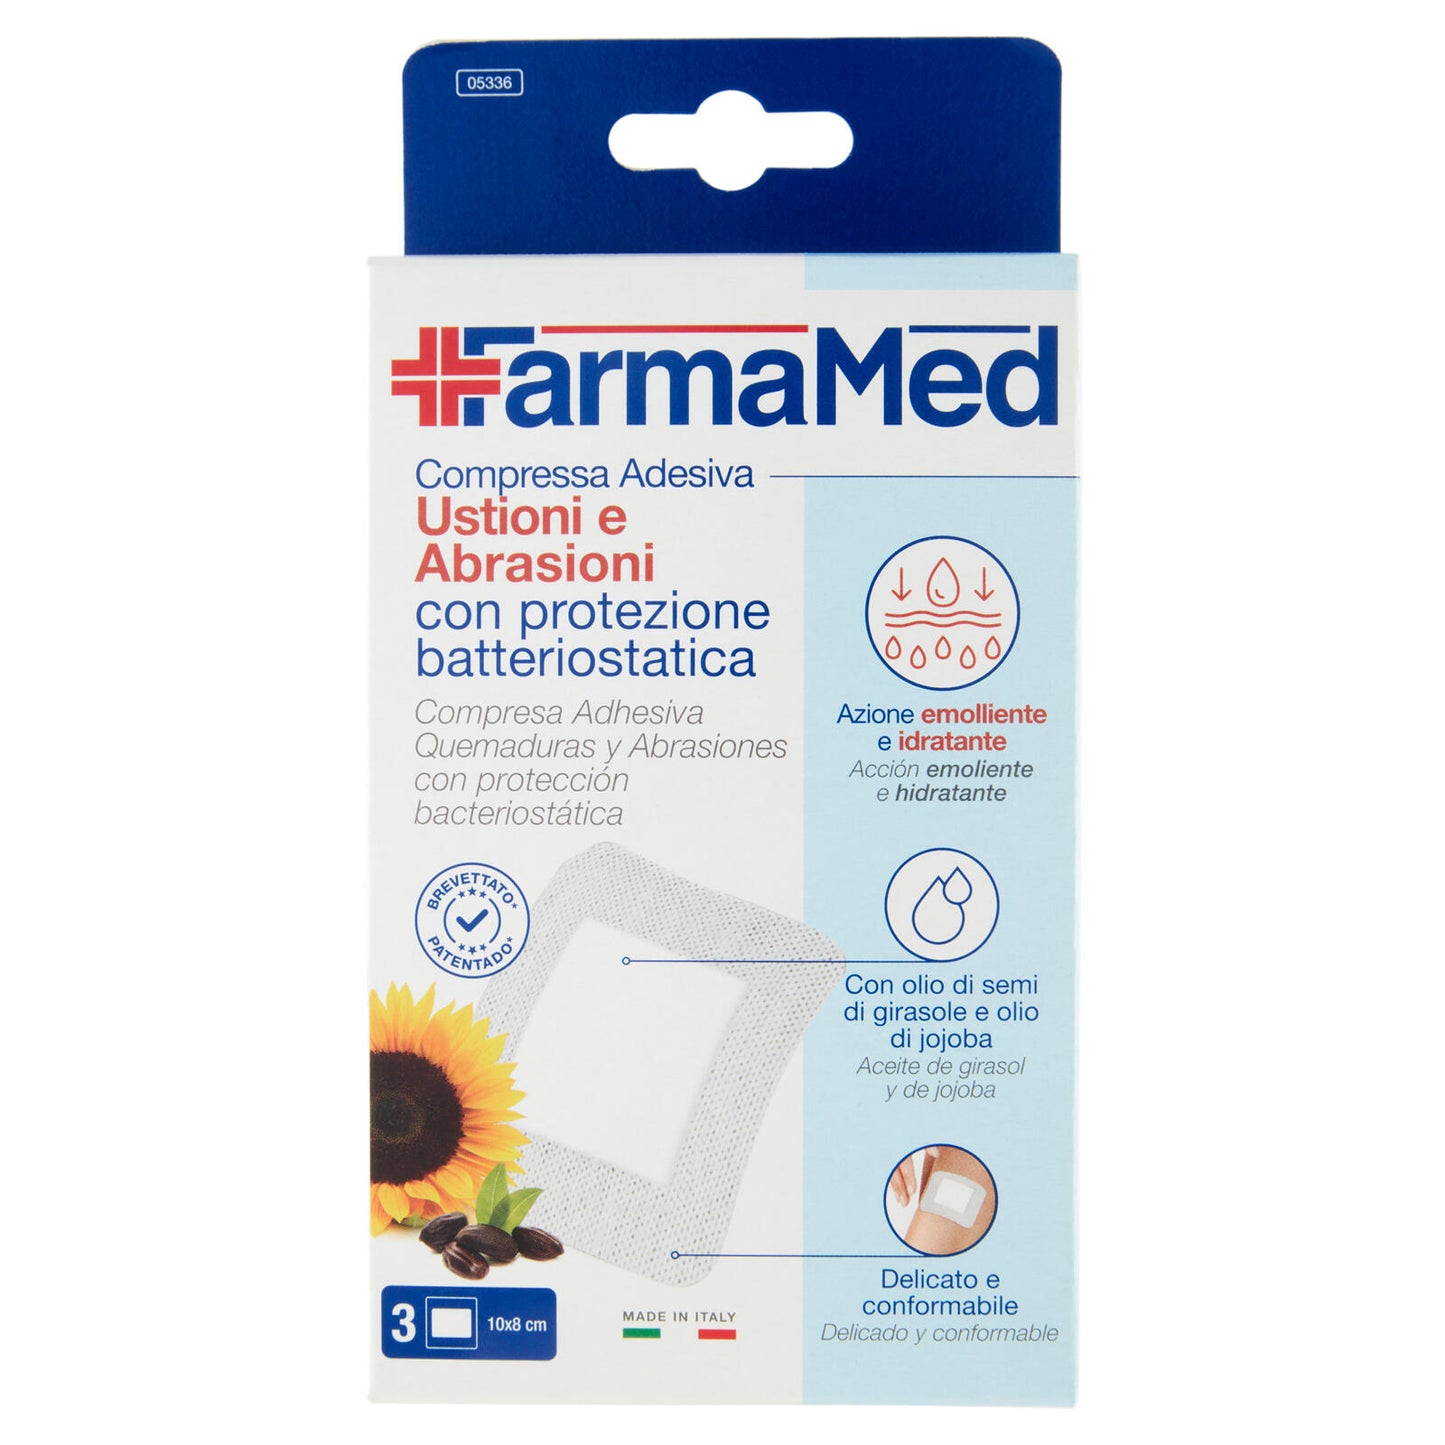 FarmaMed Compressa Adesiva Ustioni e Abrasioni con protezione batteriostatica 3 pz